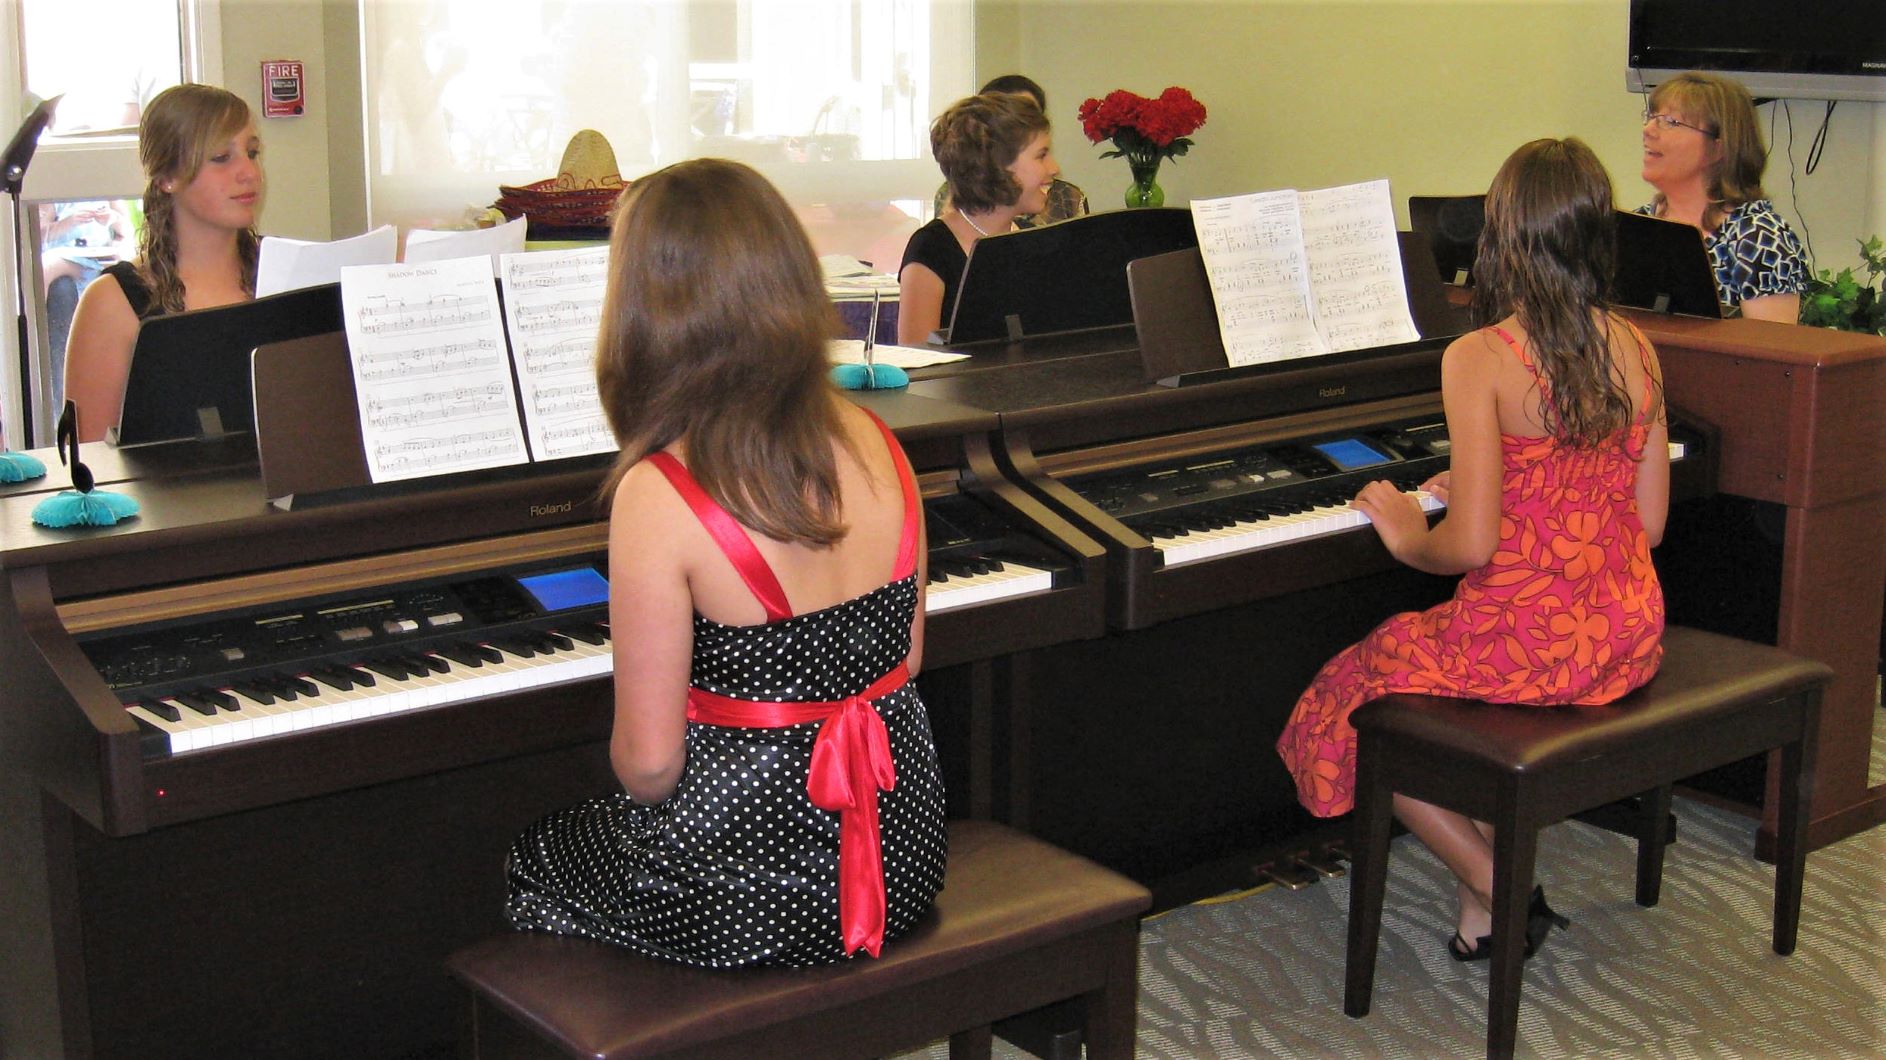 Piano Lesson Calendar - A Joyful Piano Studio